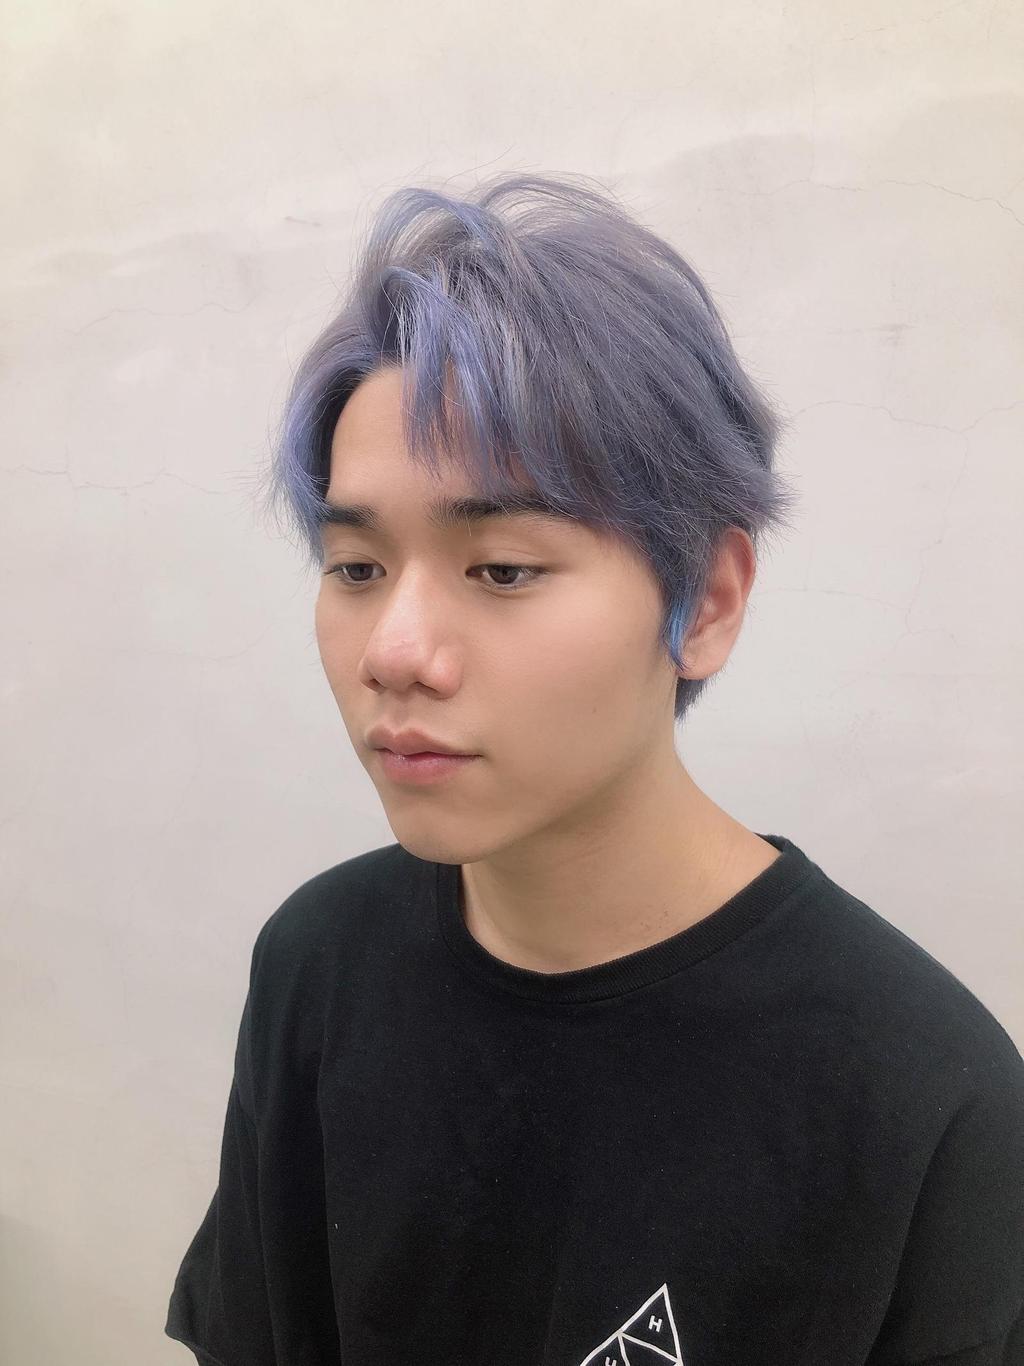 男生染灰紫色头发图片-图库-五毛网